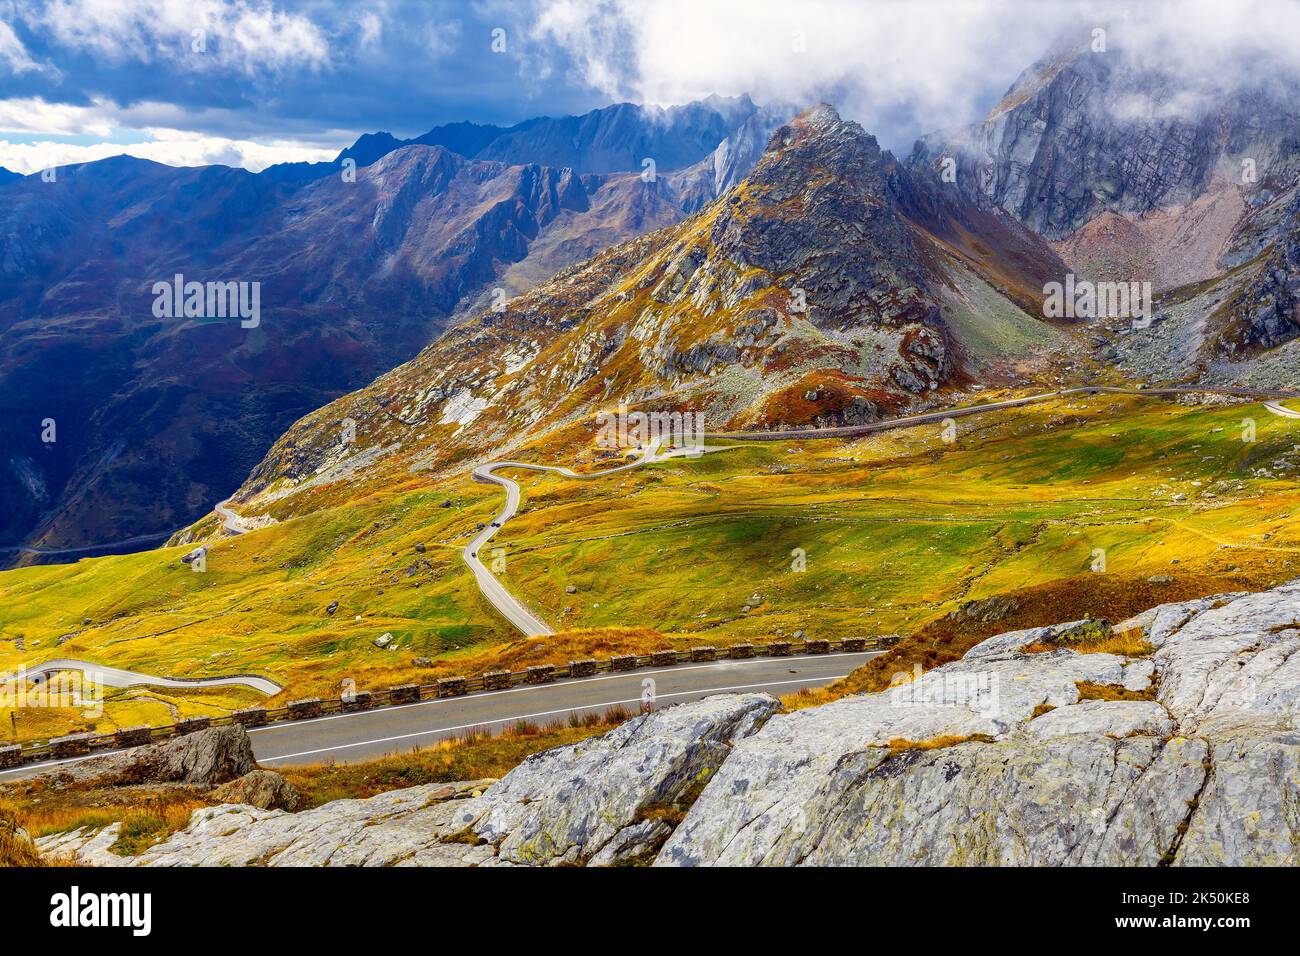 Kurvenreiche Straße, die zum Pass Col du Grand St-Bernard führt (alt. 2473 m) vom Aostatal entfernt. Italienische und Schweizer Grenze. Stockfoto